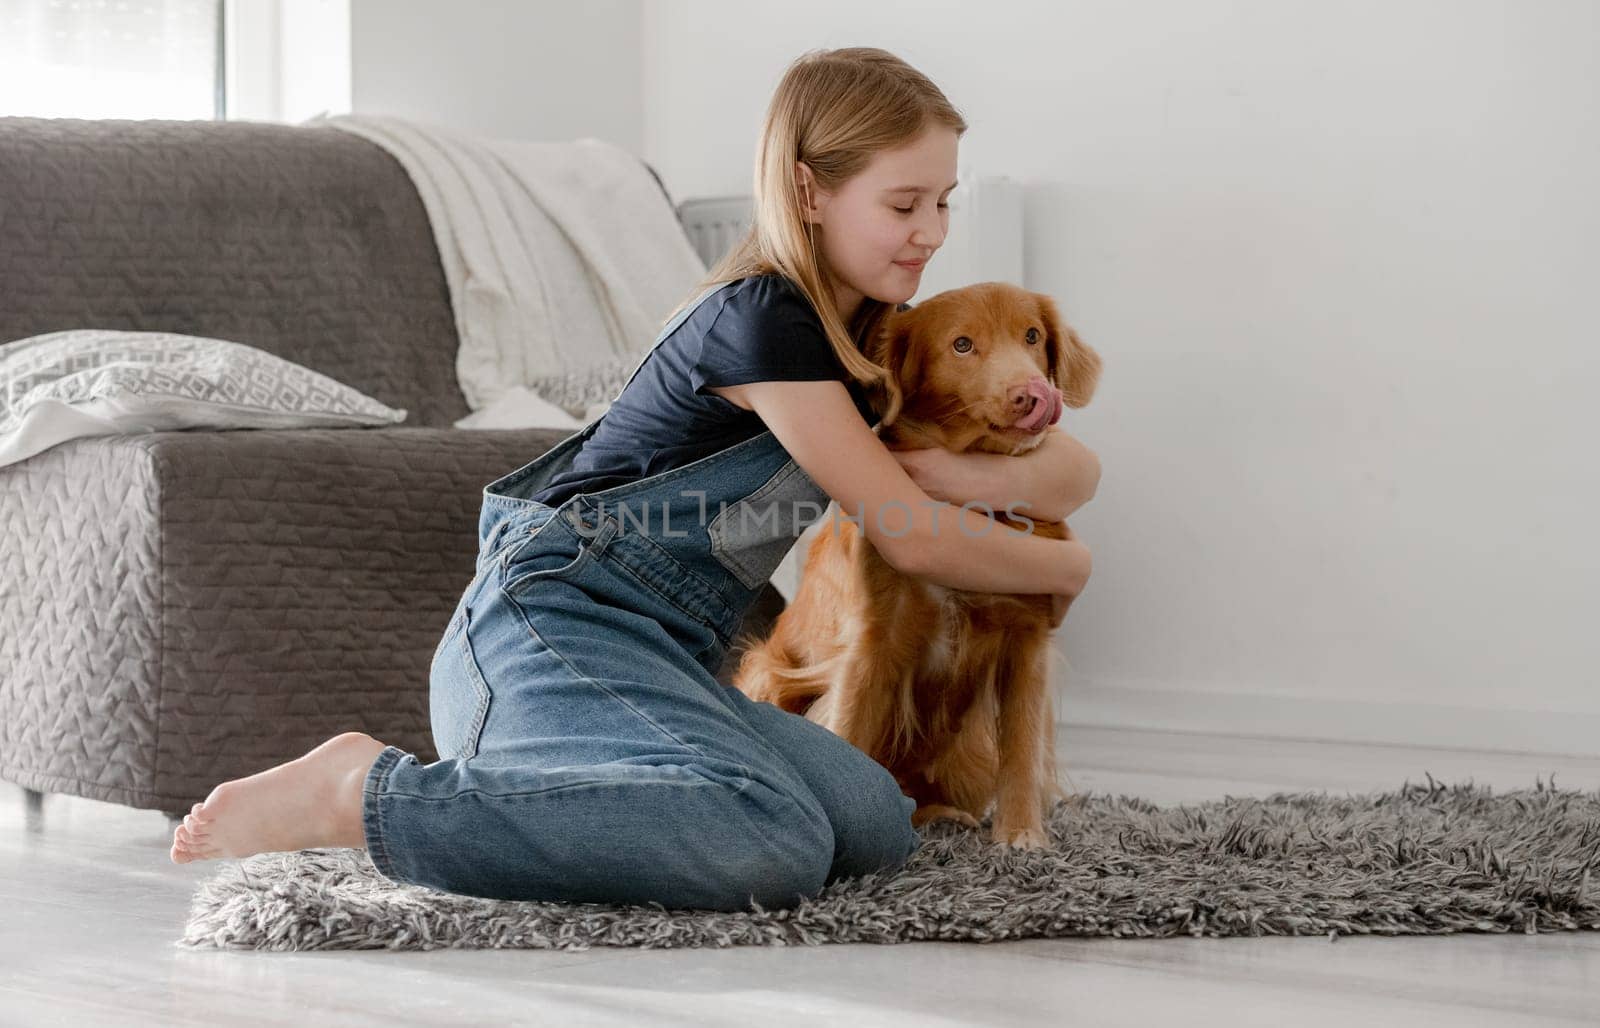 Little Girl Hugs Nova Scotia Retriever On Floor At Home by tan4ikk1